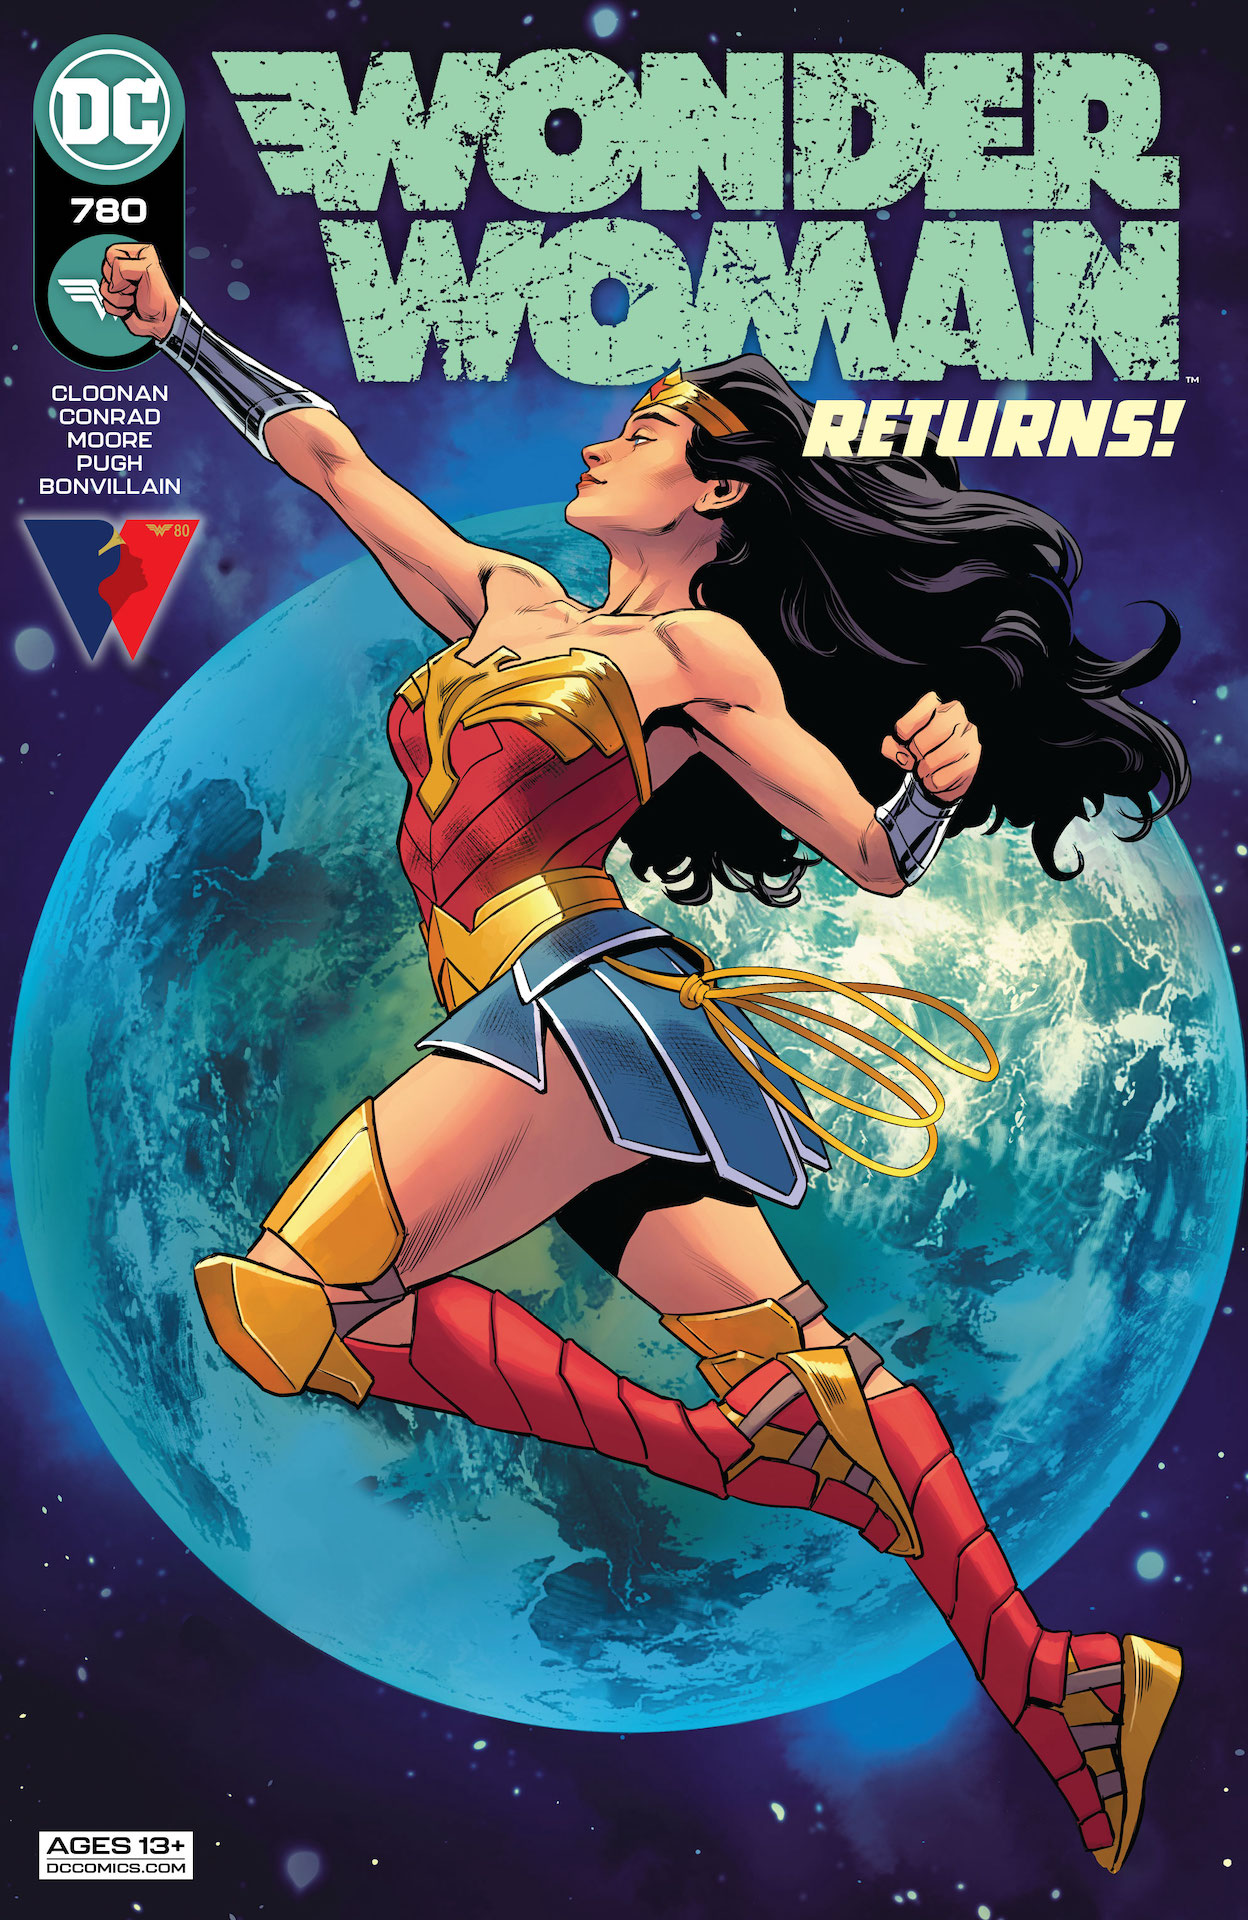 DC Preview: Wonder Woman Vol 5 #780